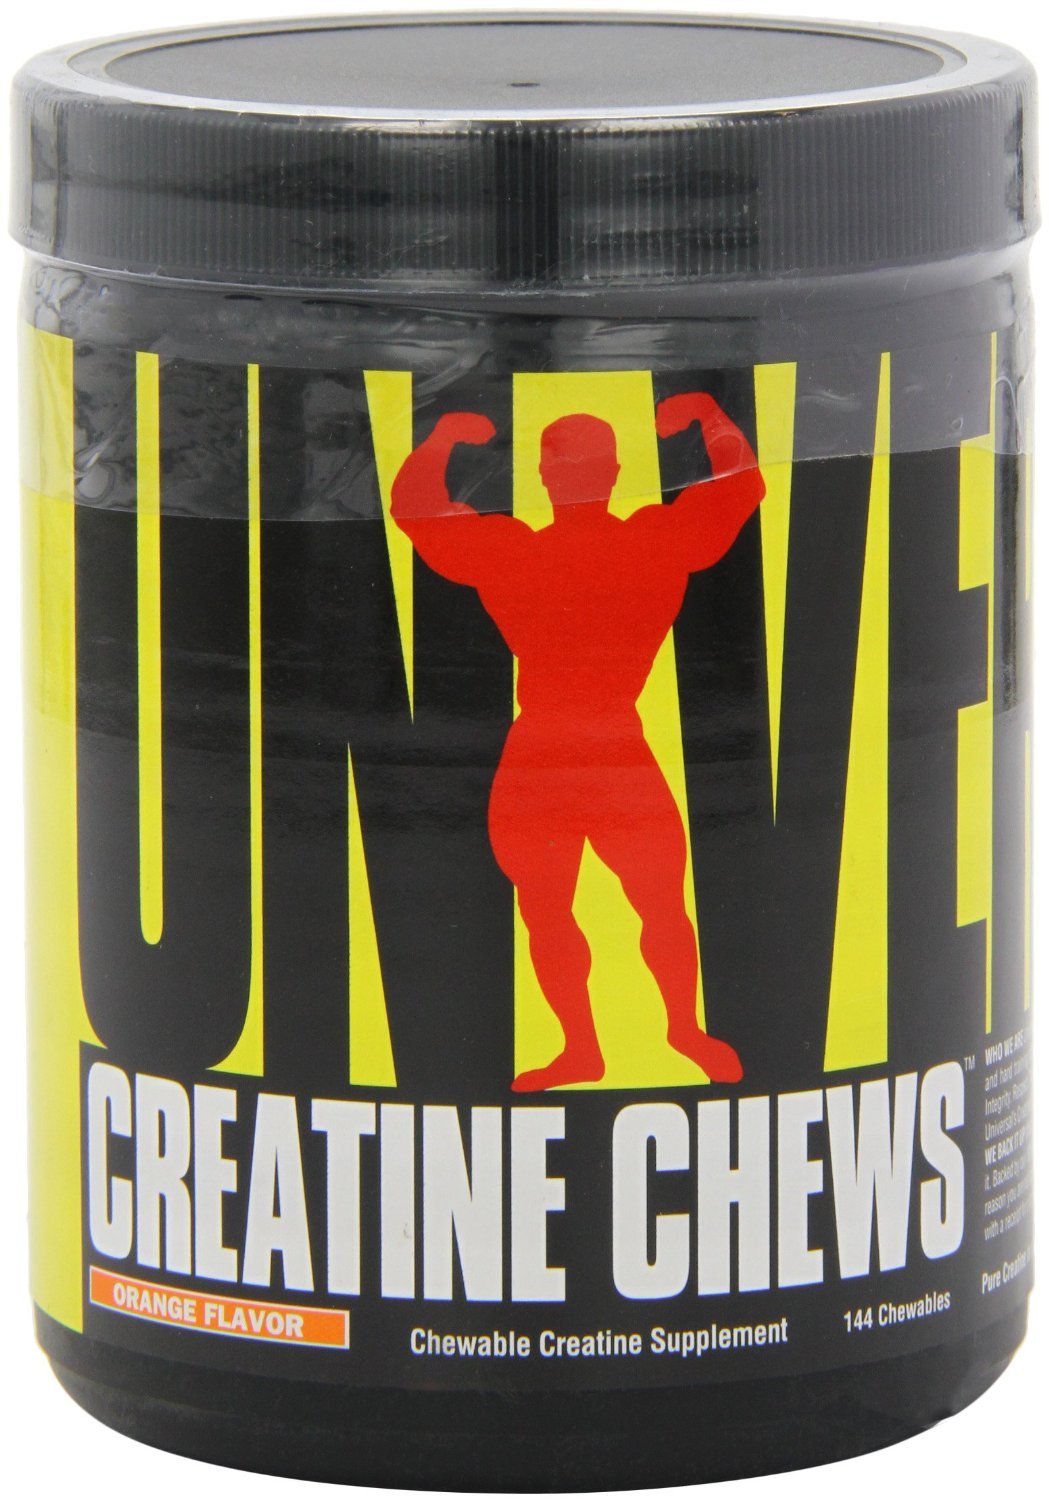 Creatine Chews, 144 шт, Universal Nutrition. Креатин моногидрат. Набор массы Энергия и выносливость Увеличение силы 